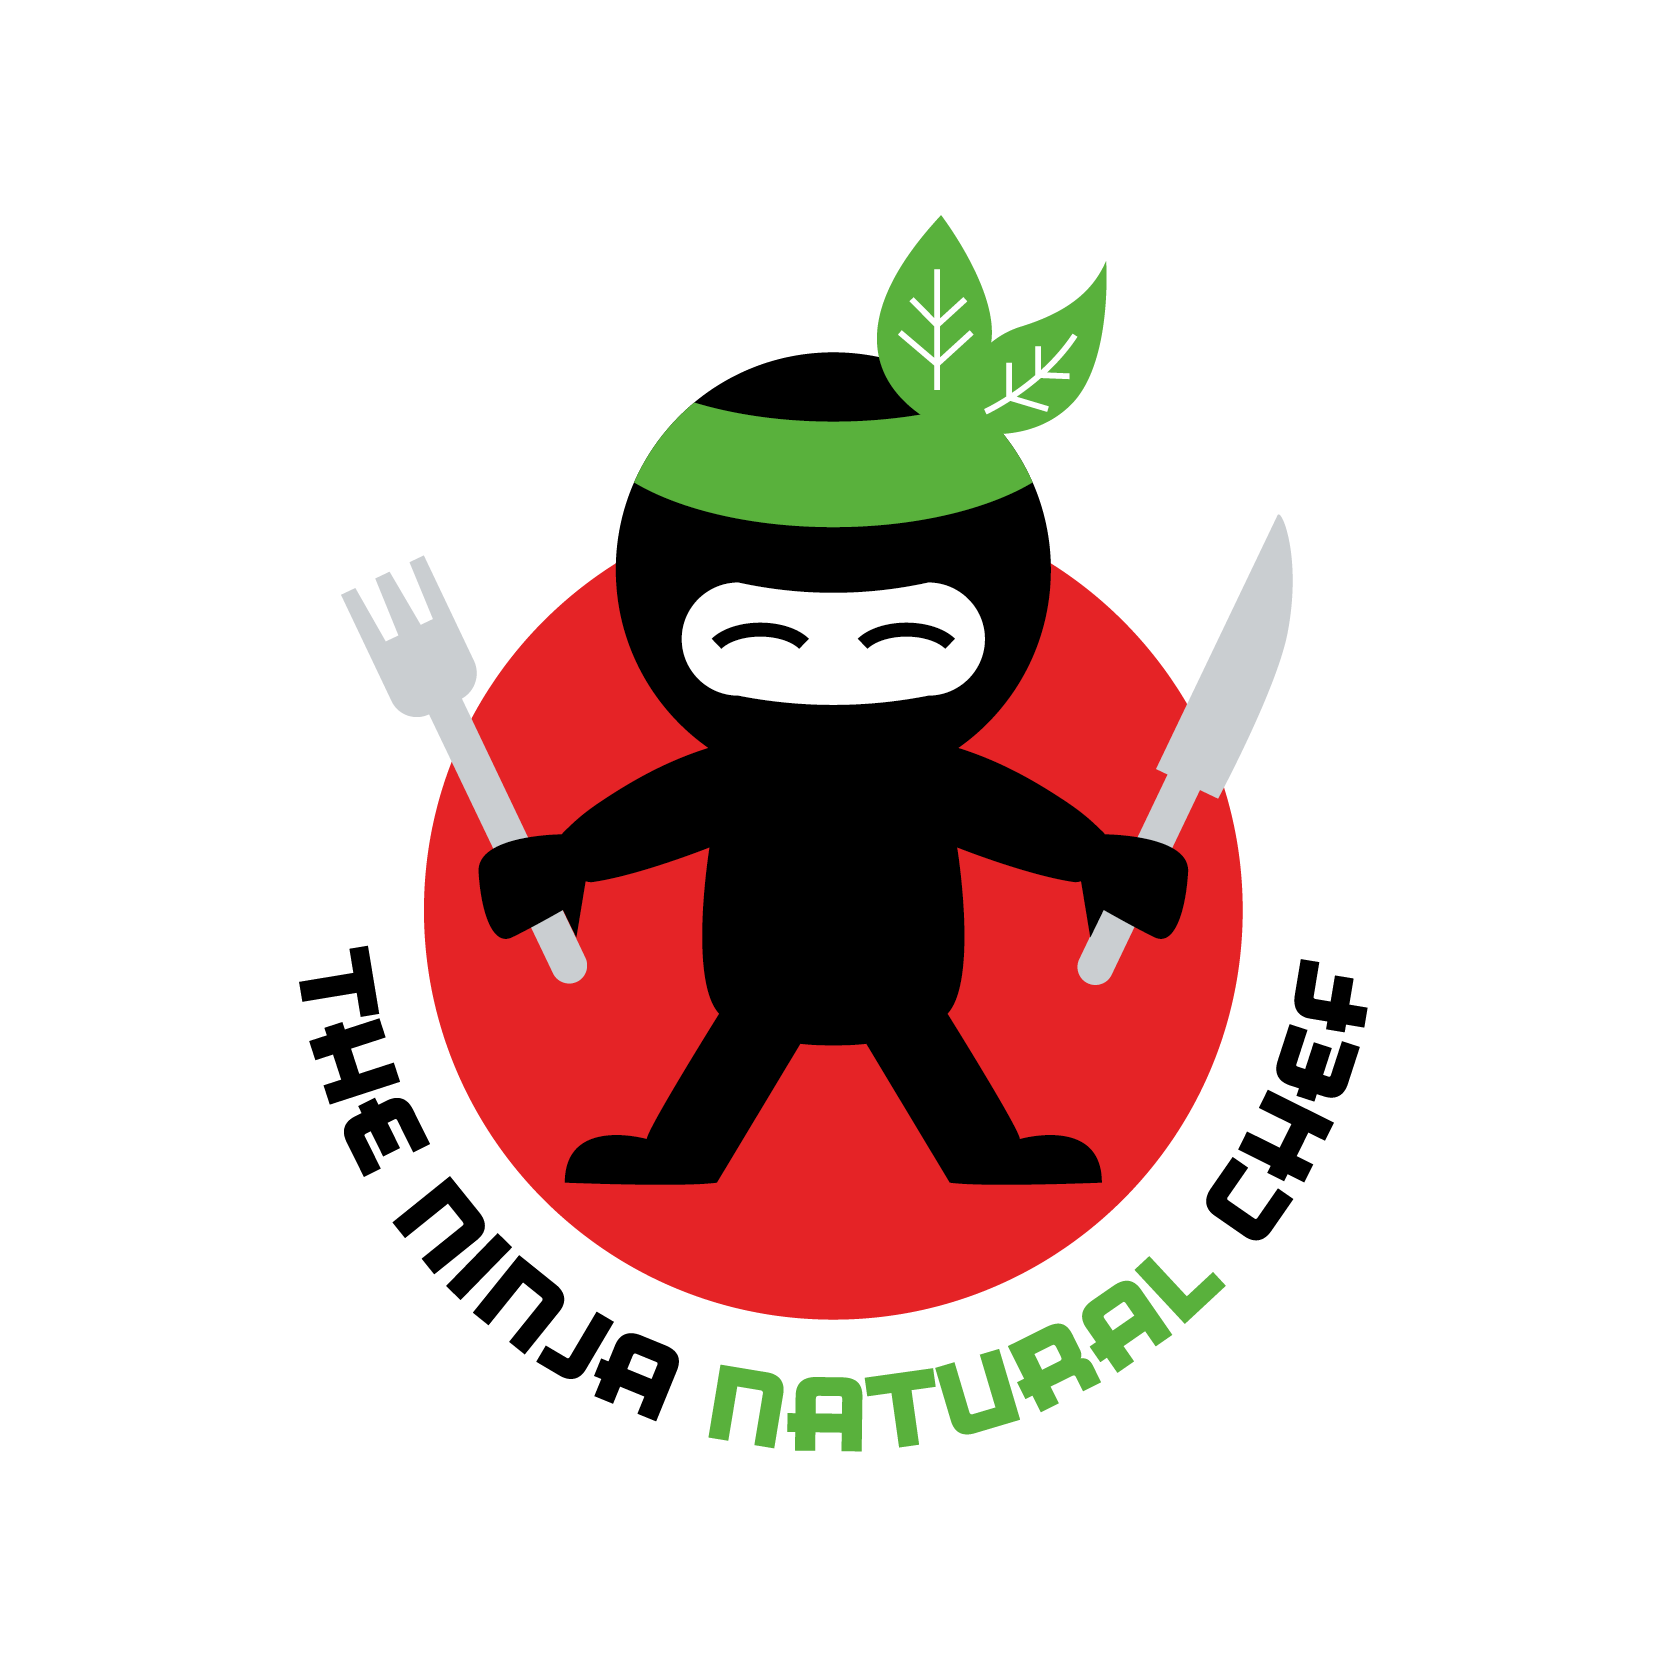 Logo Design for Food Business